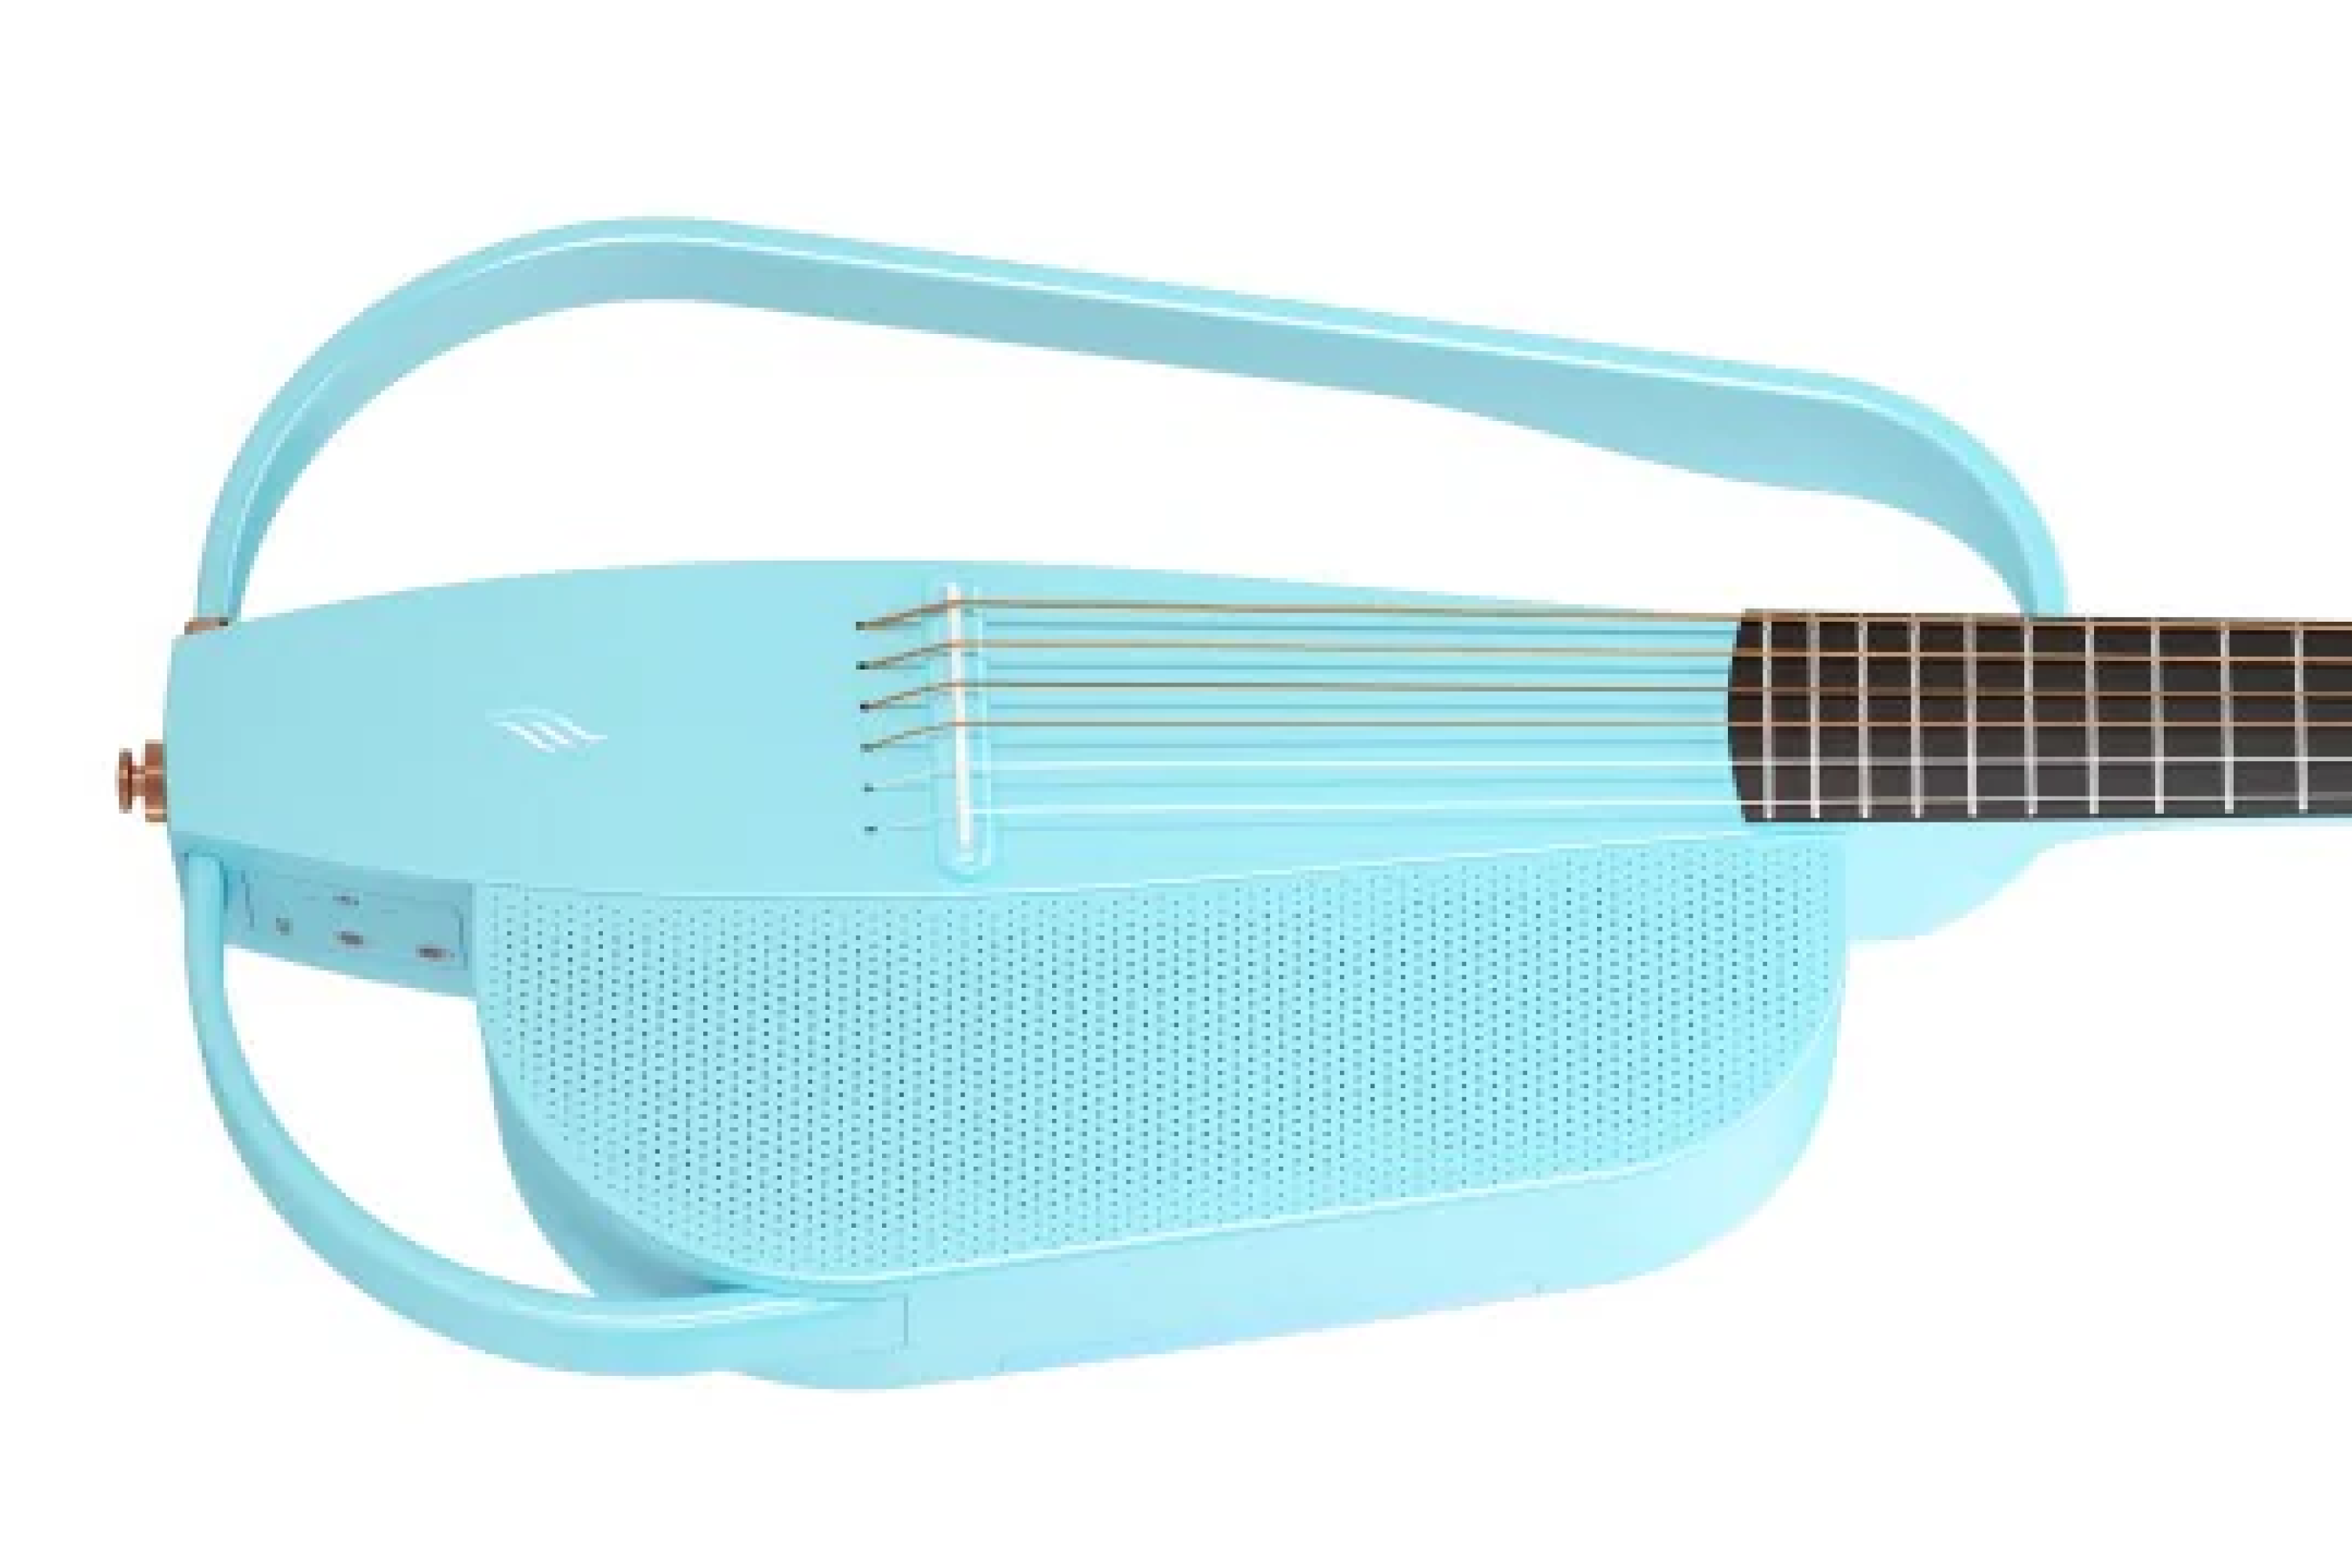 Enya NEXG 2 All-in-One Smart Audio Loop Guitar - Blue